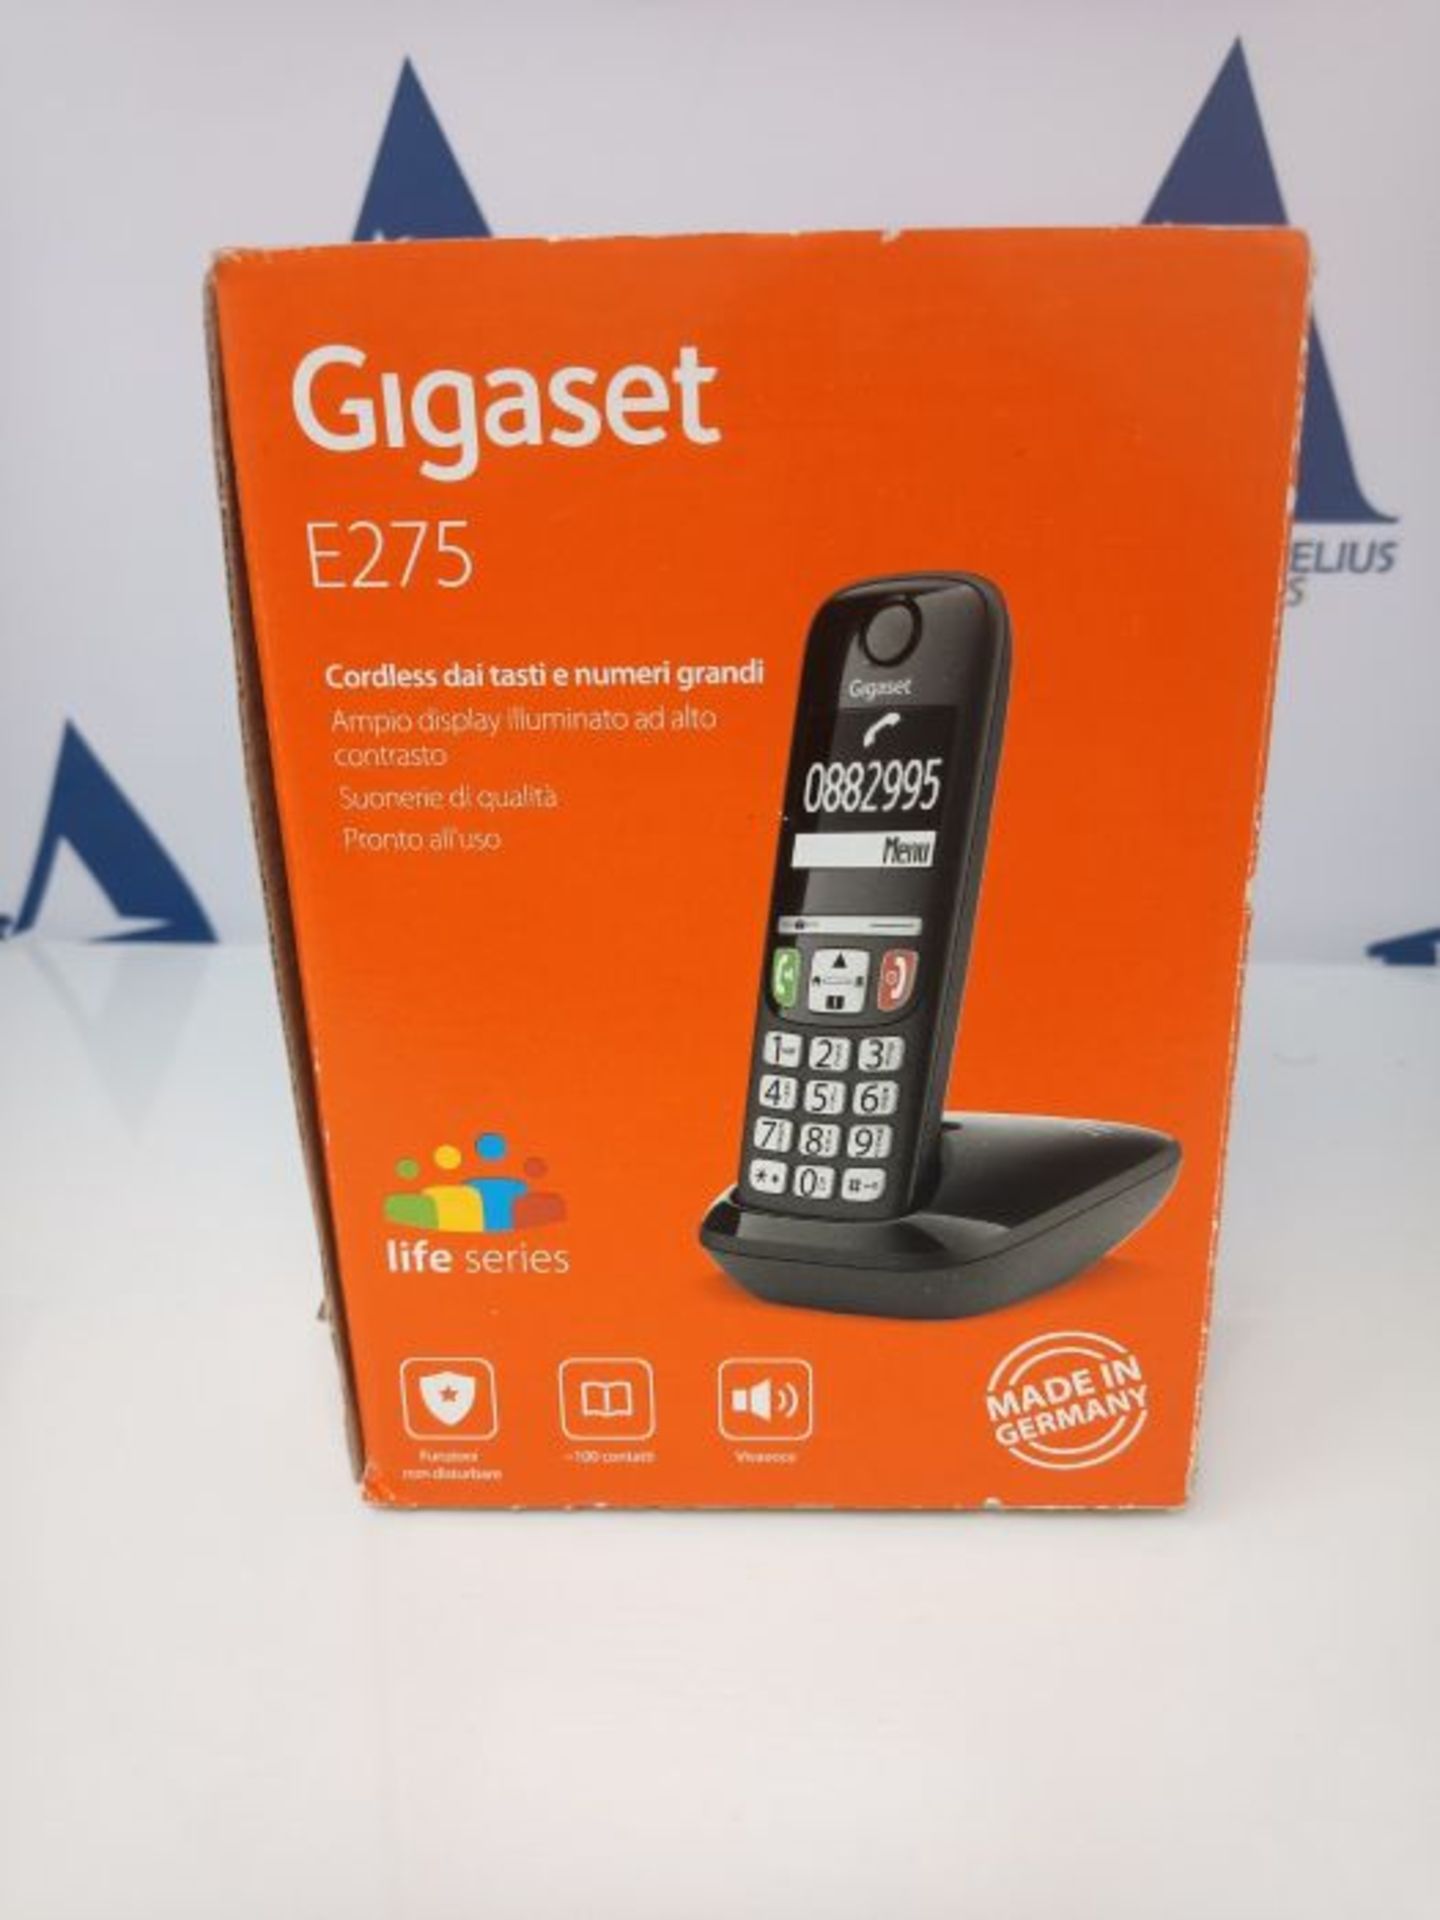 Gigaset E275 Il nuovo telefono cordless dai tasti grandi, numeri grandi e suonerie for